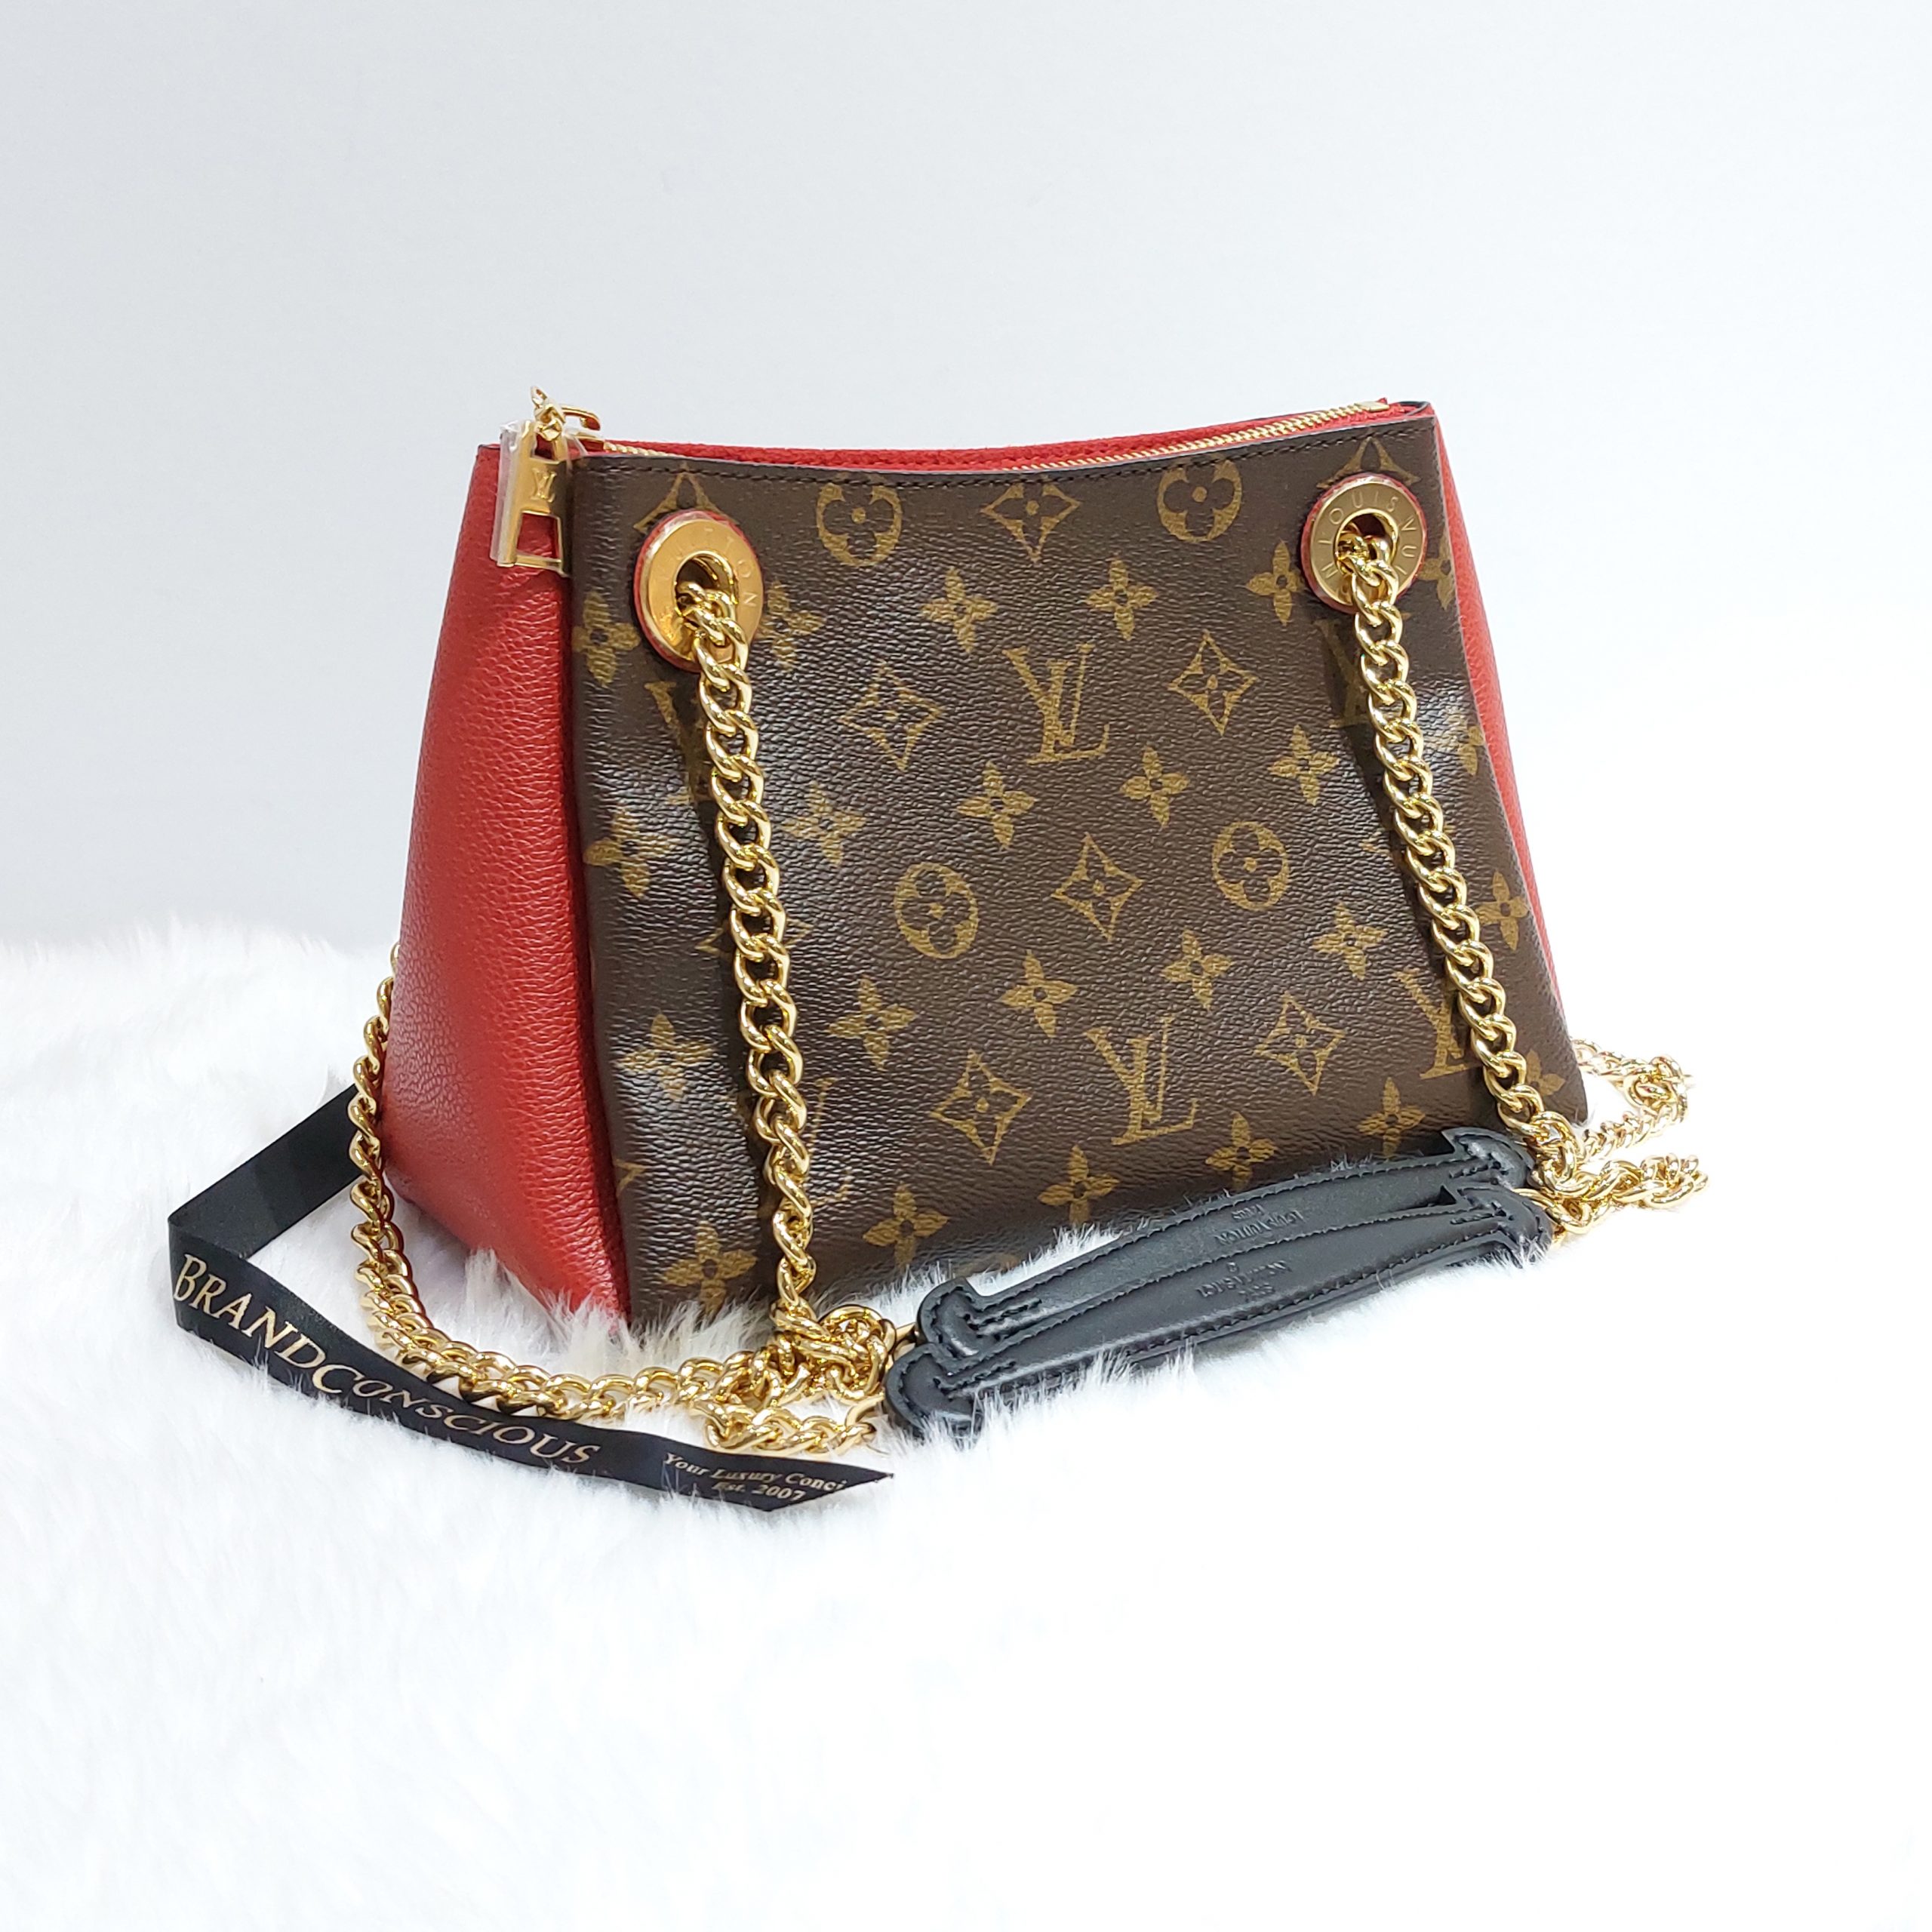 Shop Louis Vuitton Shoulder Bags (M44876) by luxurysuite